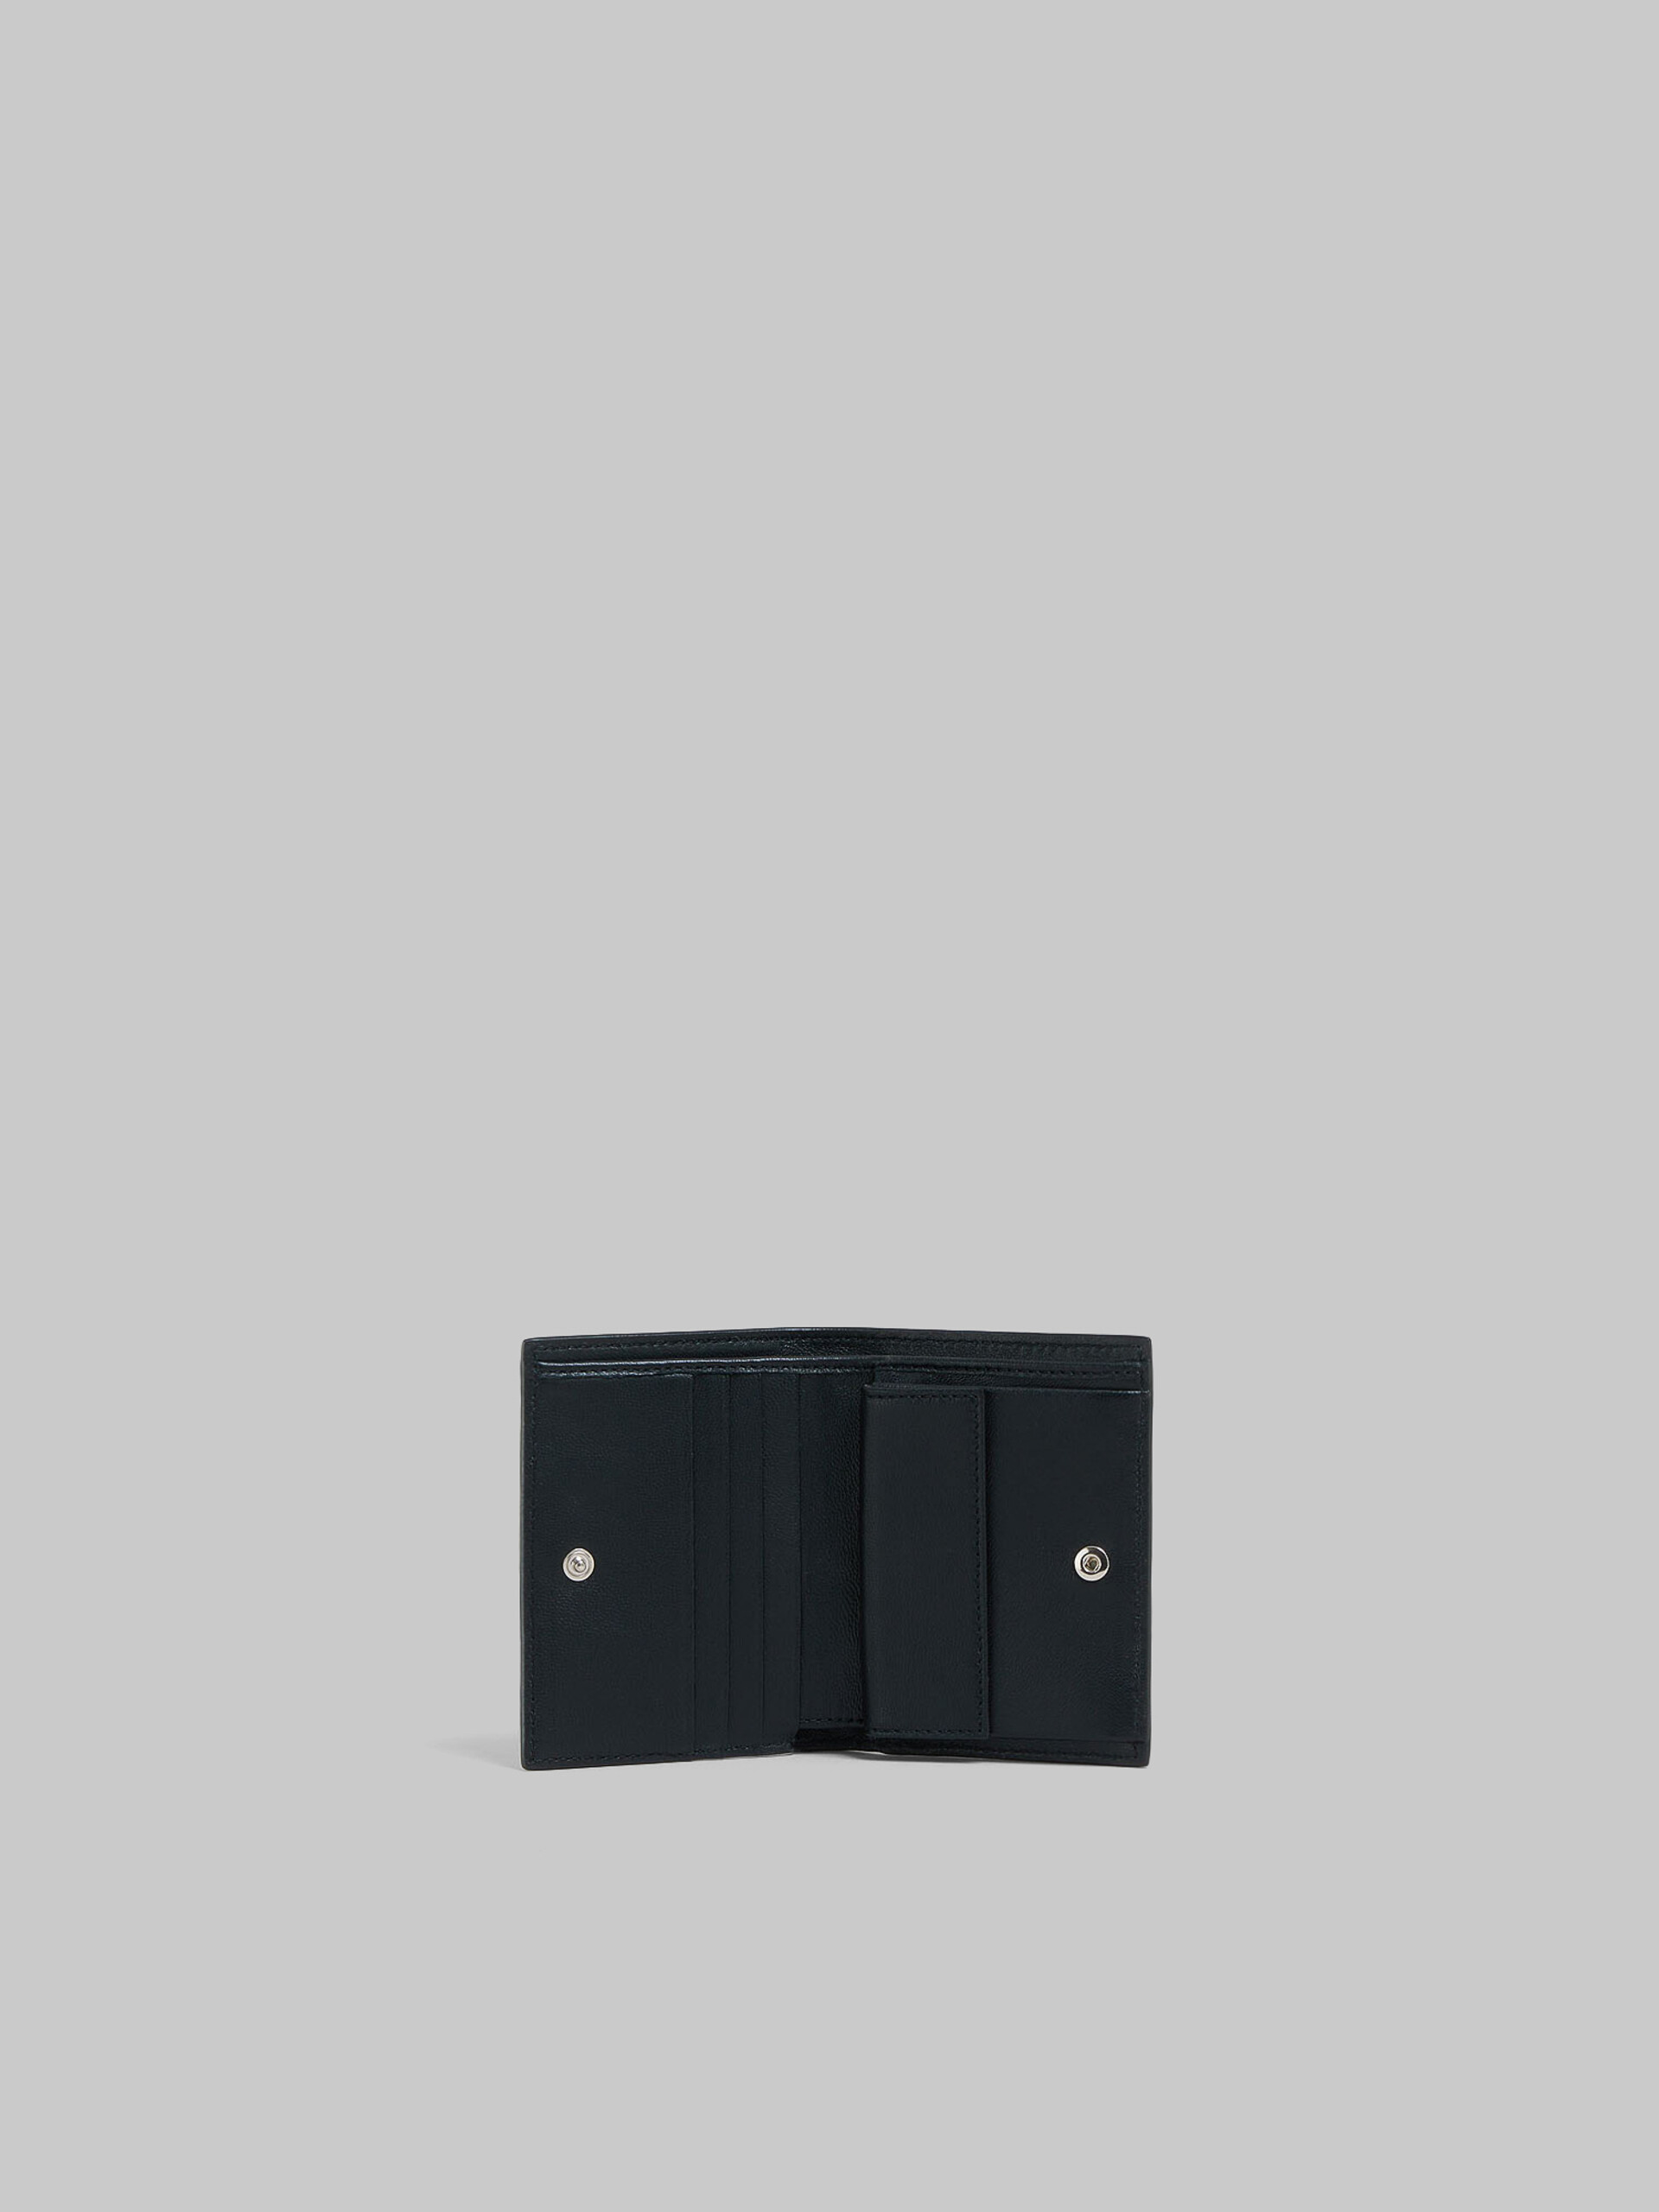 ブラウン レザー製 二つ折りウォレット、マルニメンディング - 財布 - Image 2